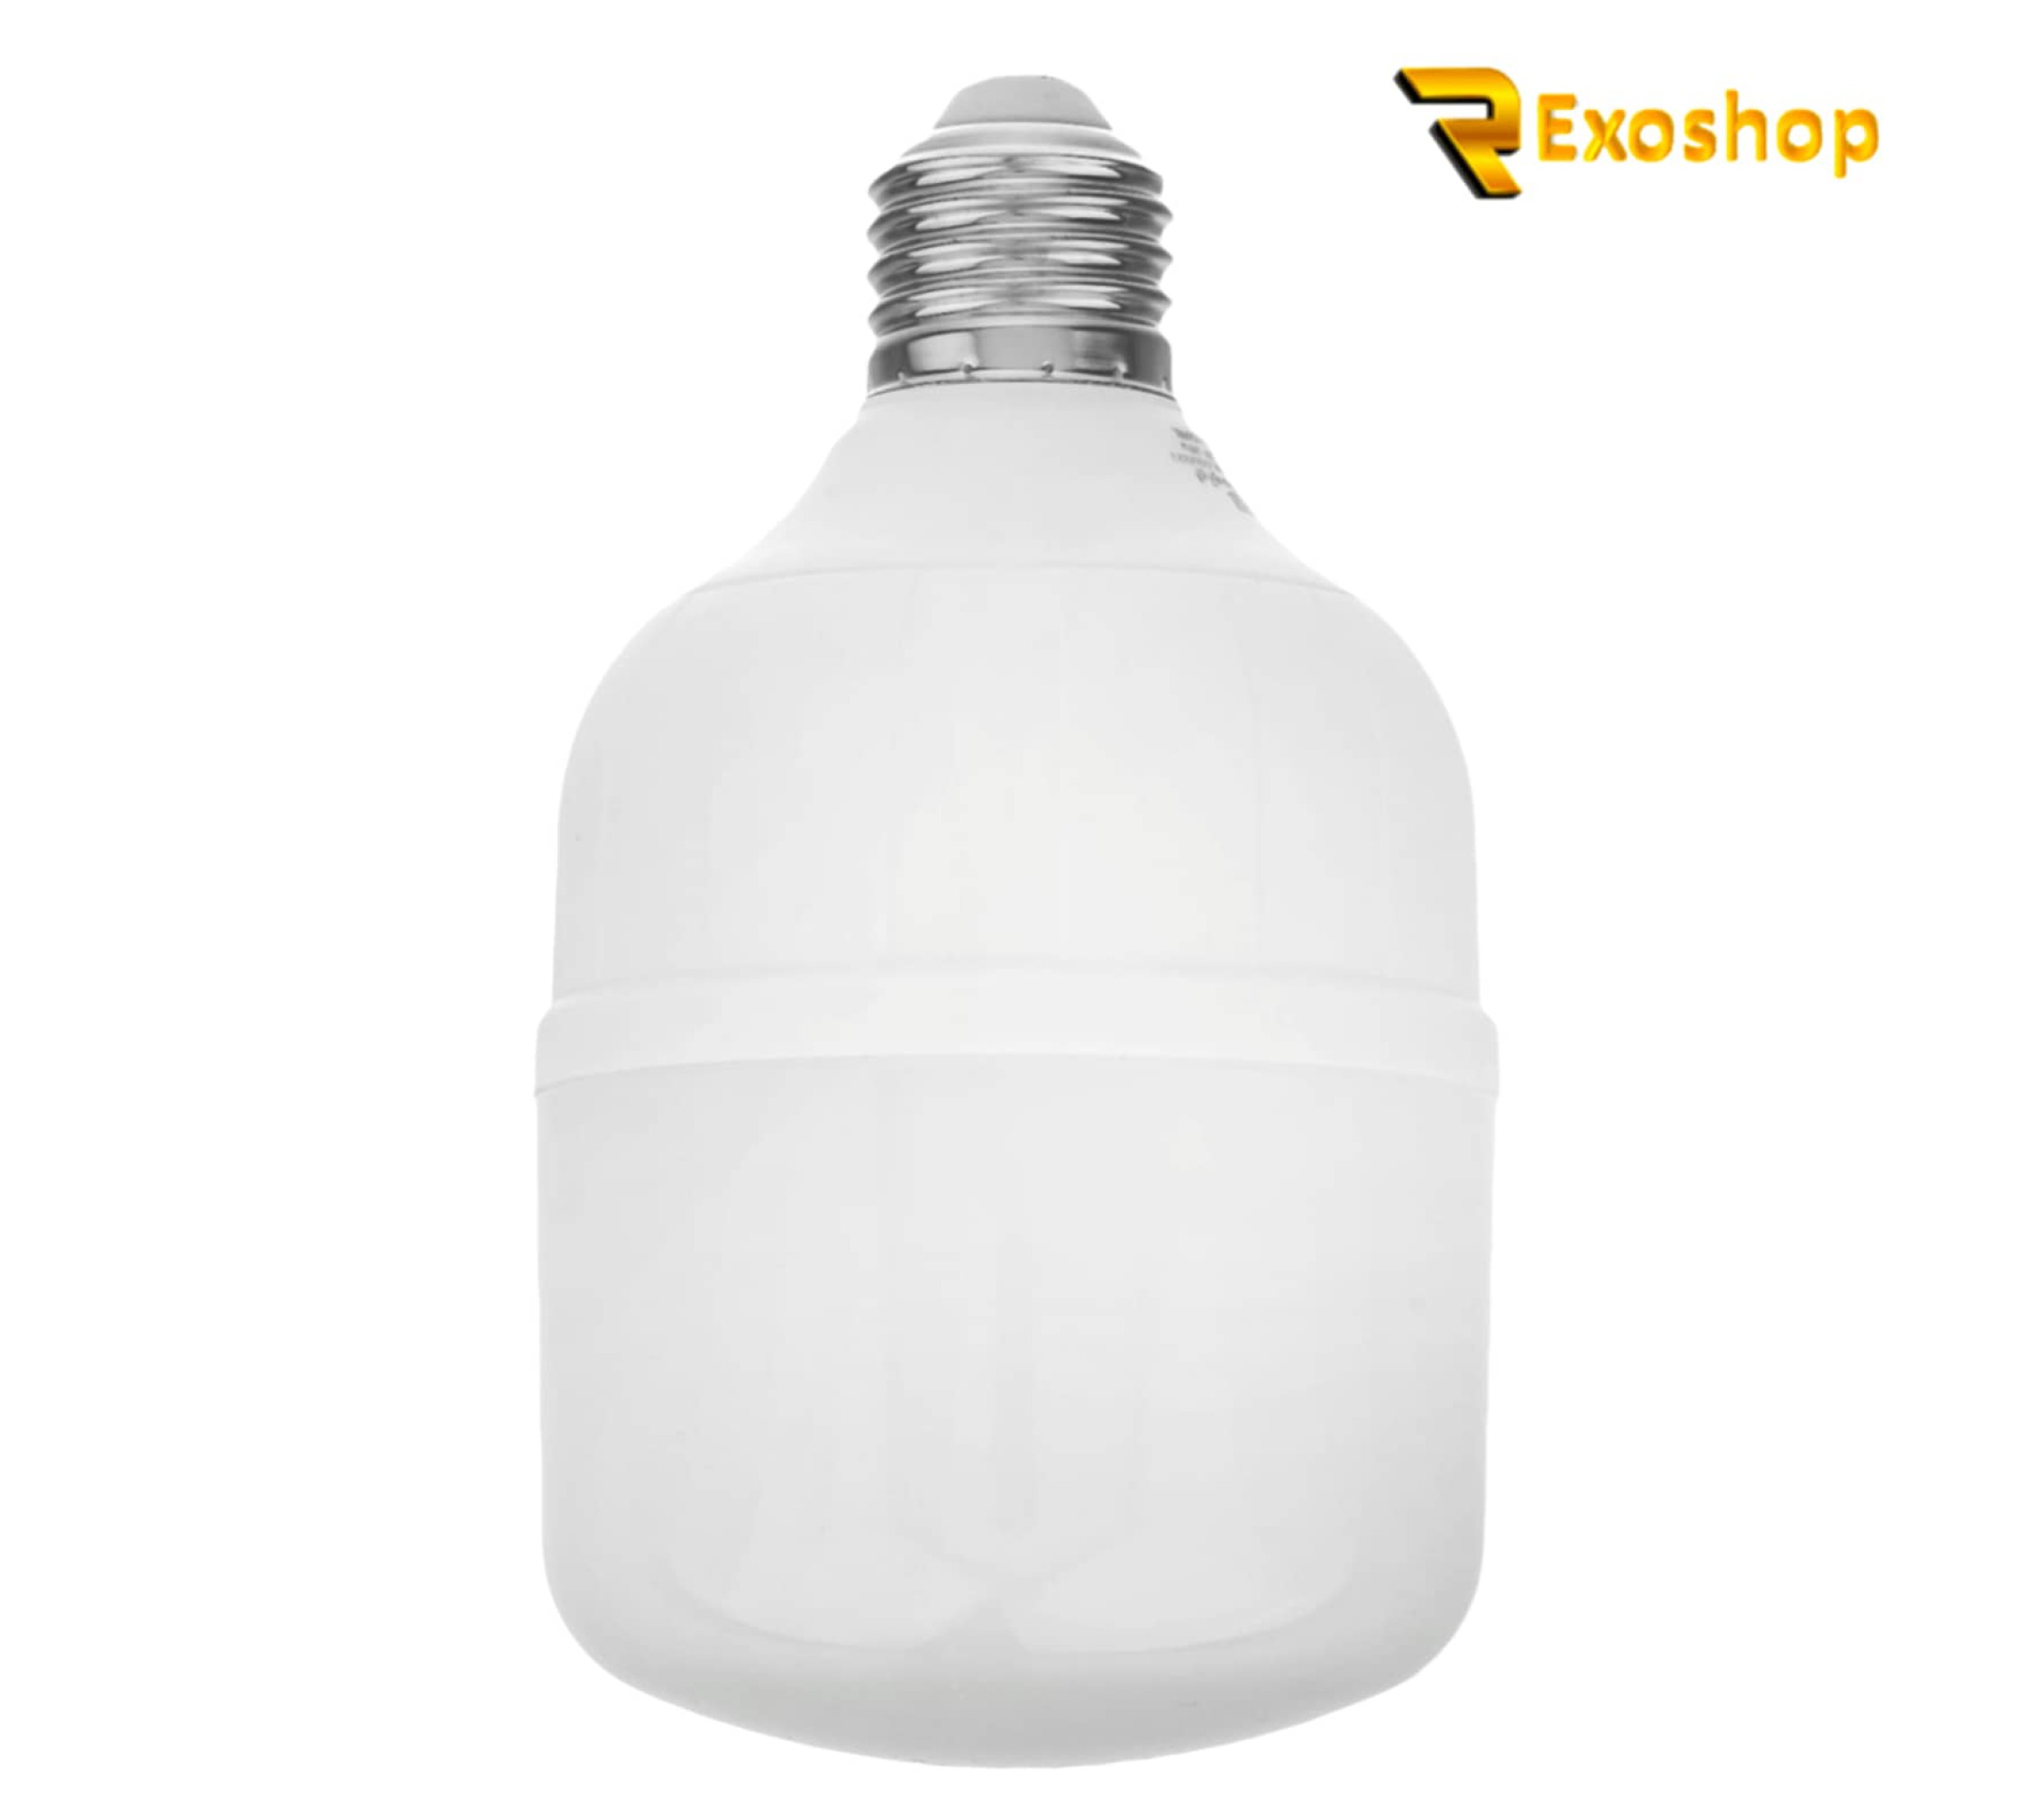  لامپ ال ای دی 20 وات لیتومکس کد 001 پایه E27 یکی از بهترین لامپ ها است که با بهترین کیفیت و قیمتی ارزان در رکسوشاپ است 